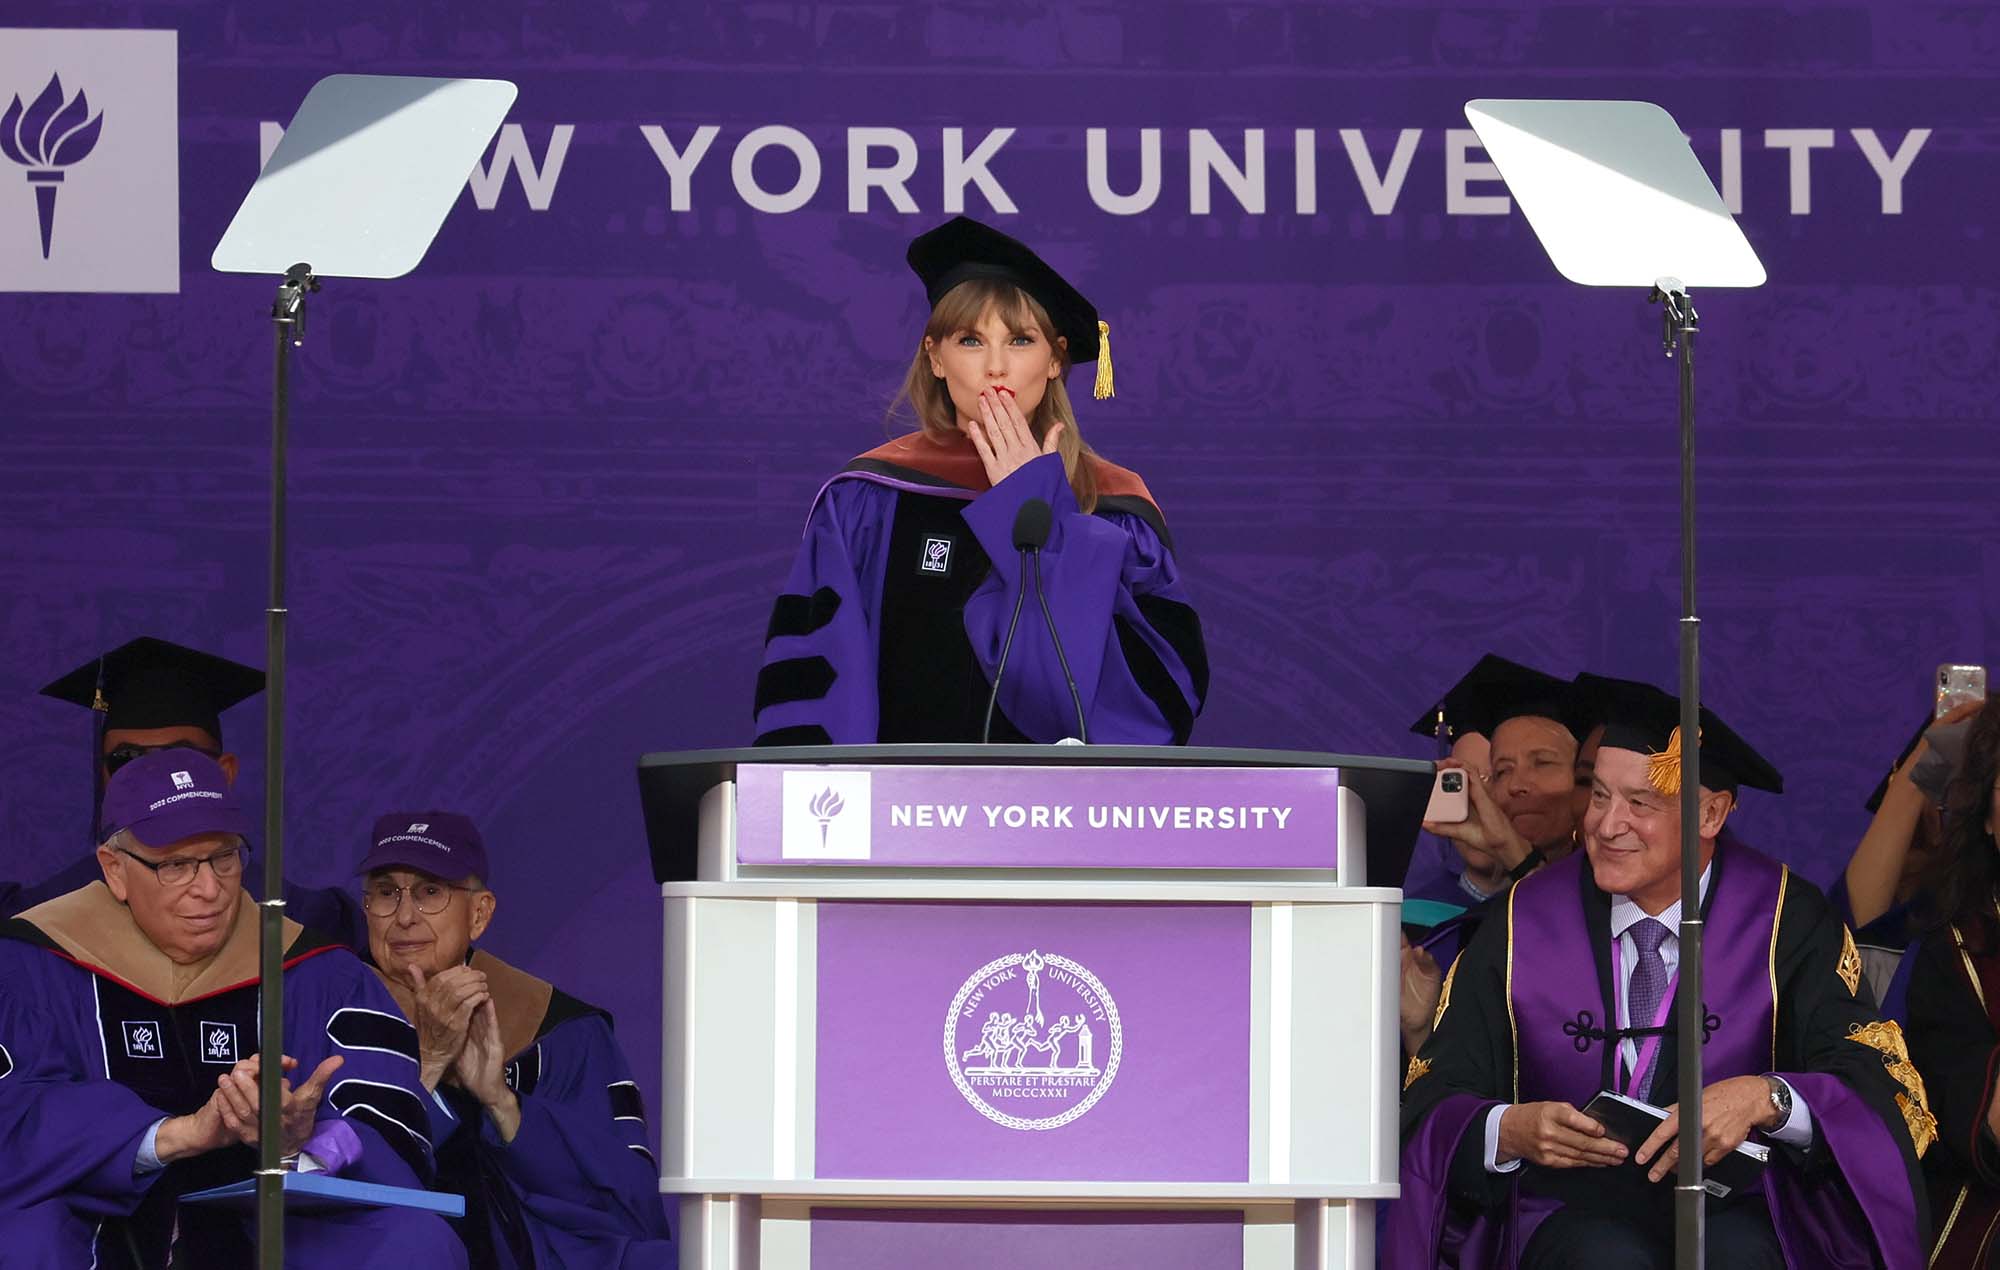 Посмотрите, как Тейлор Свифт произносит вступительную речь в Нью-Йоркском университете: «Давайте танцевать, как будто мы 22-й класс»